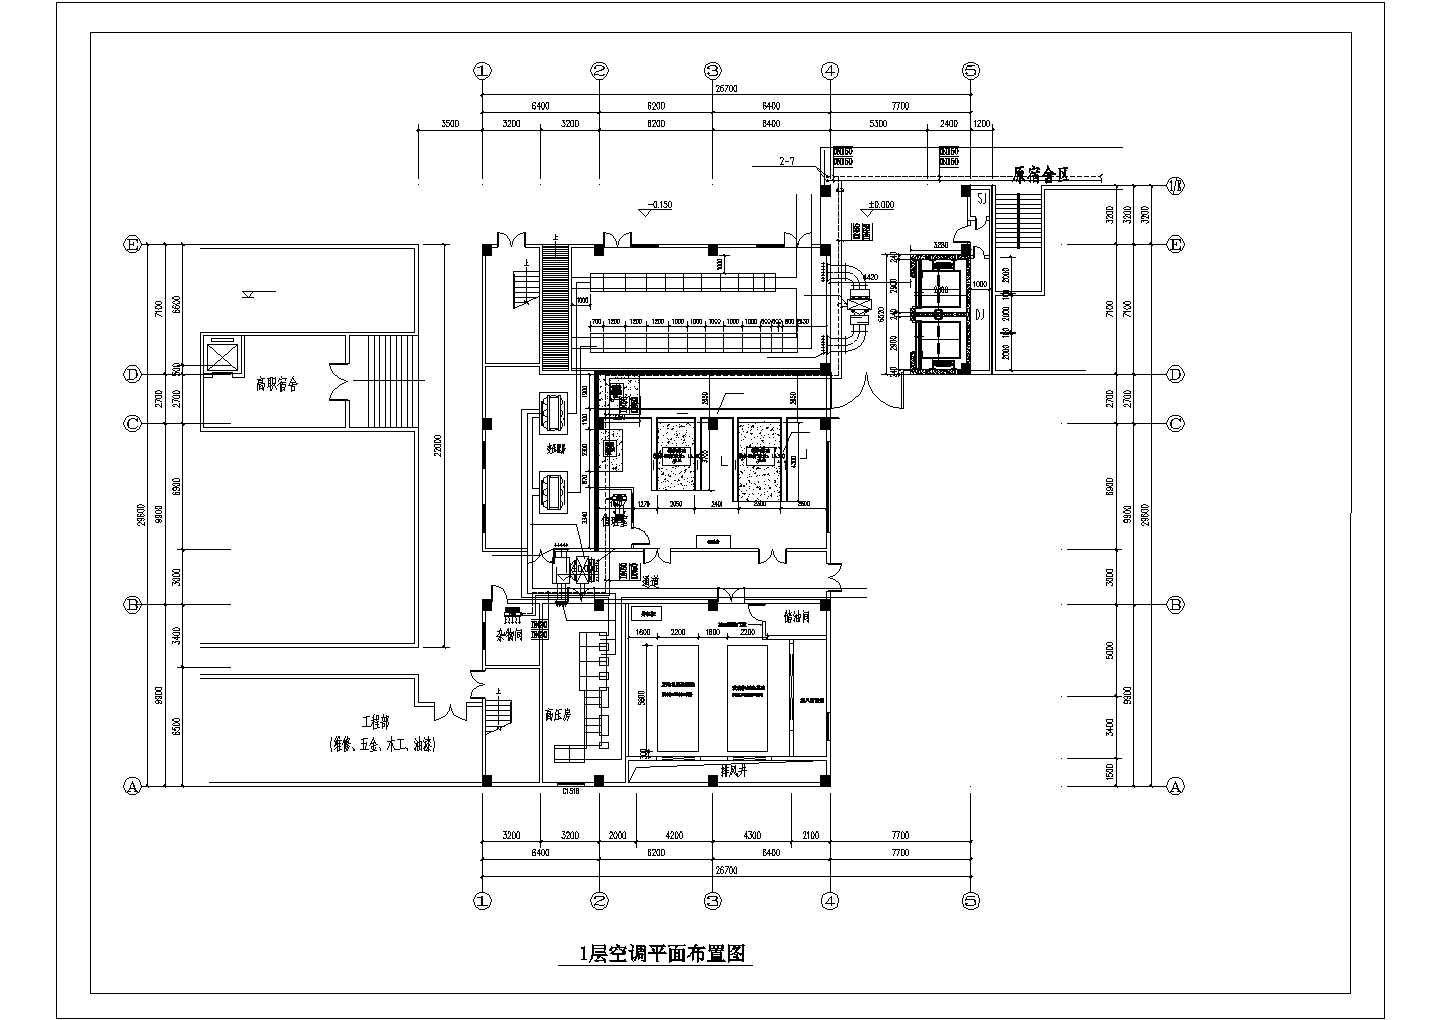 小高层学校食堂餐饮楼空调新风排烟系统设计施工图（平面图全）